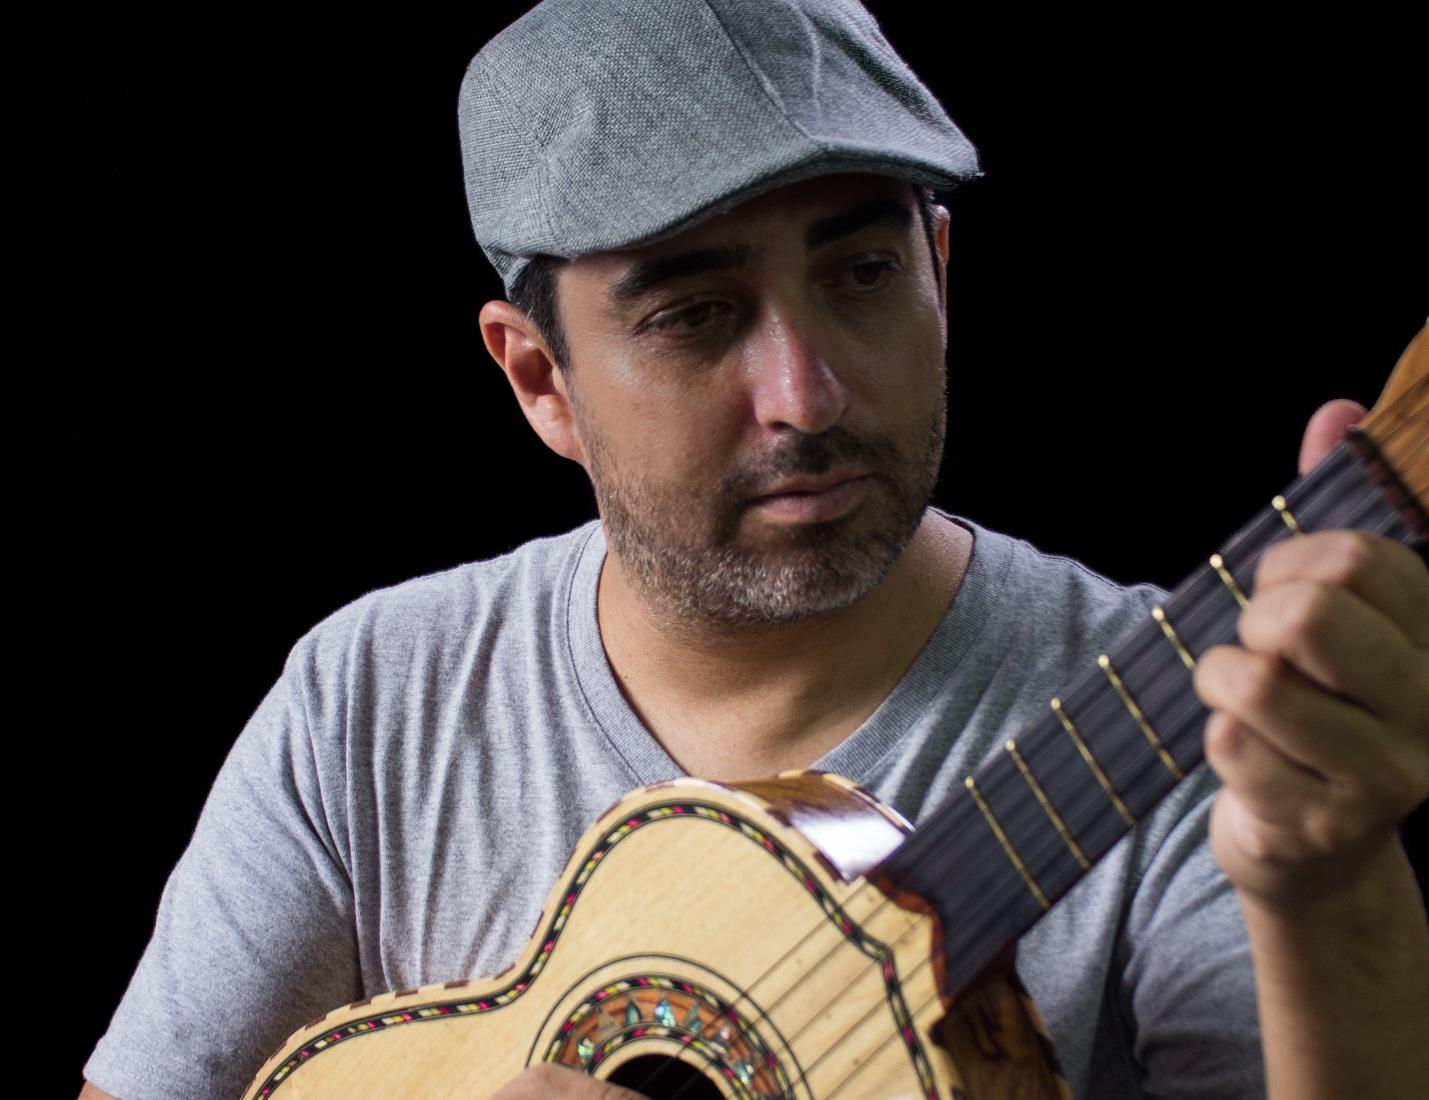 Guanajuato: Luis Meseguer Cantautor y Canta-Cuentos que fusiona gracias a su música emociones y palabras para dar vida a historias hechas